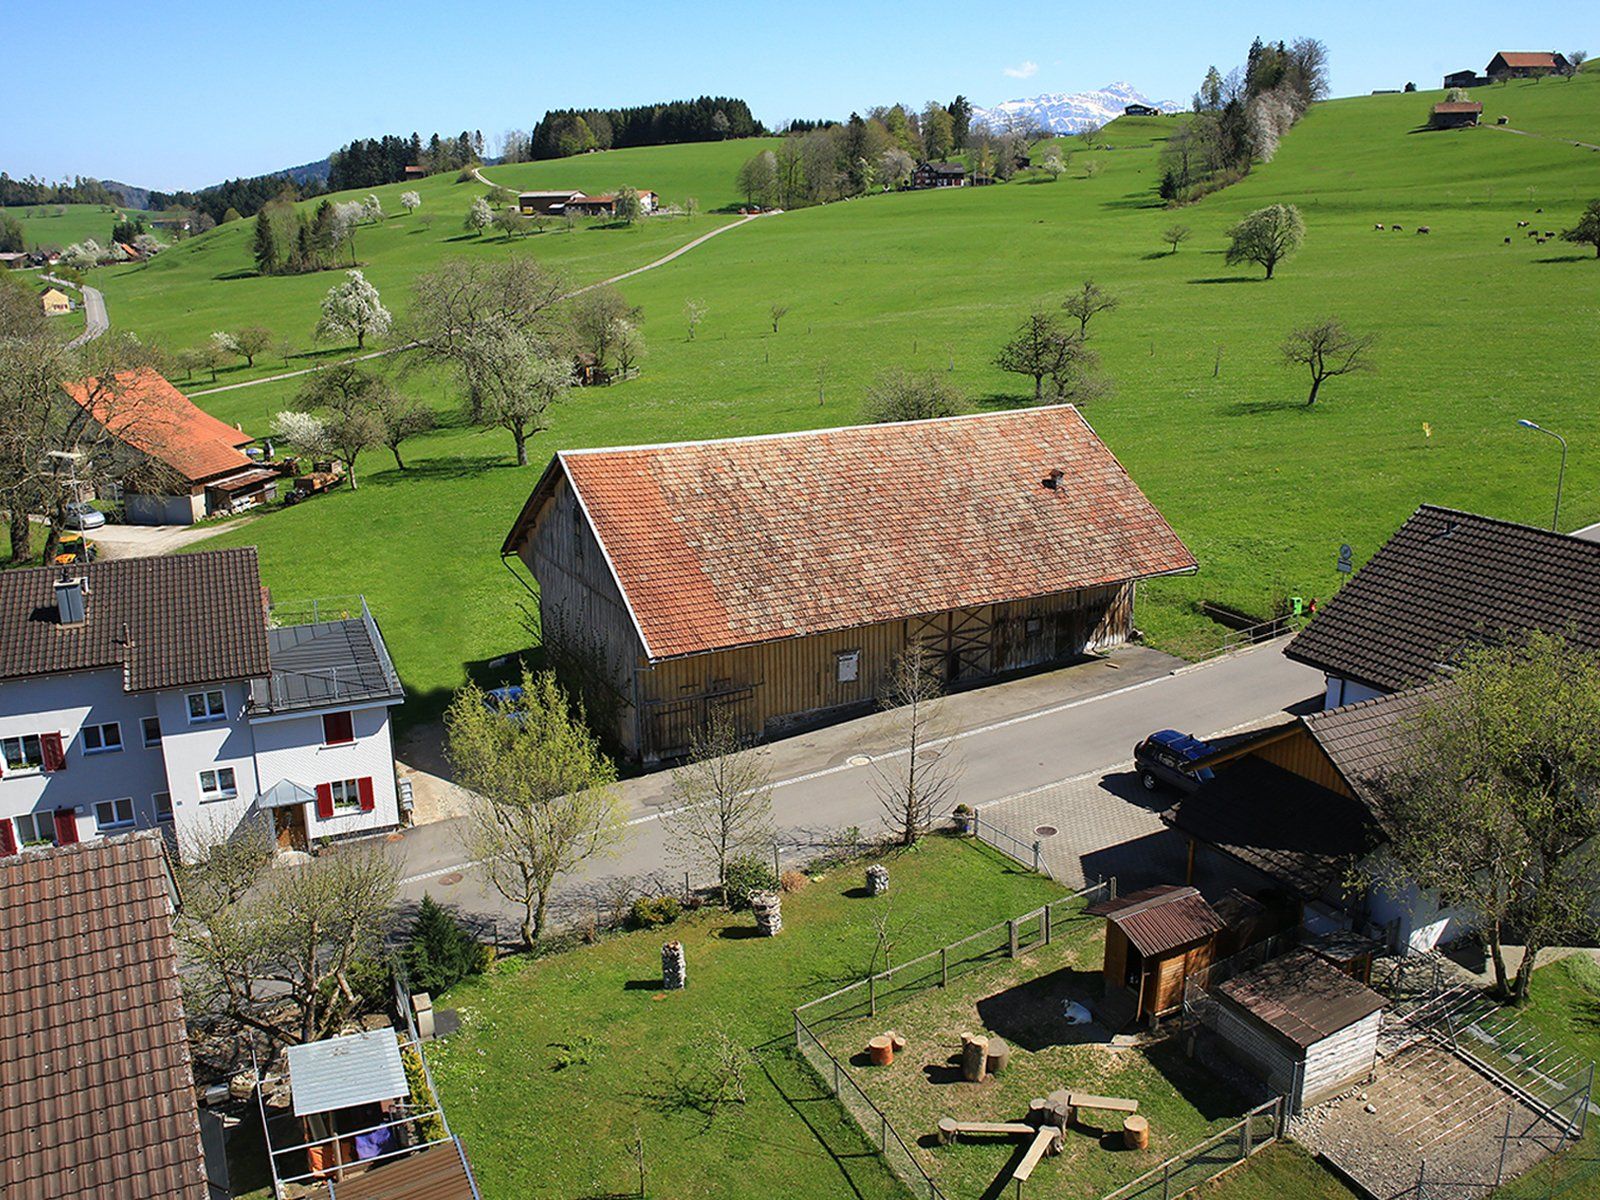 Immobilien Visualisierung: Vorher-Nachher-Vergleich von der Fotomontage eines Mehrfamilienhaus in der Schweiz.